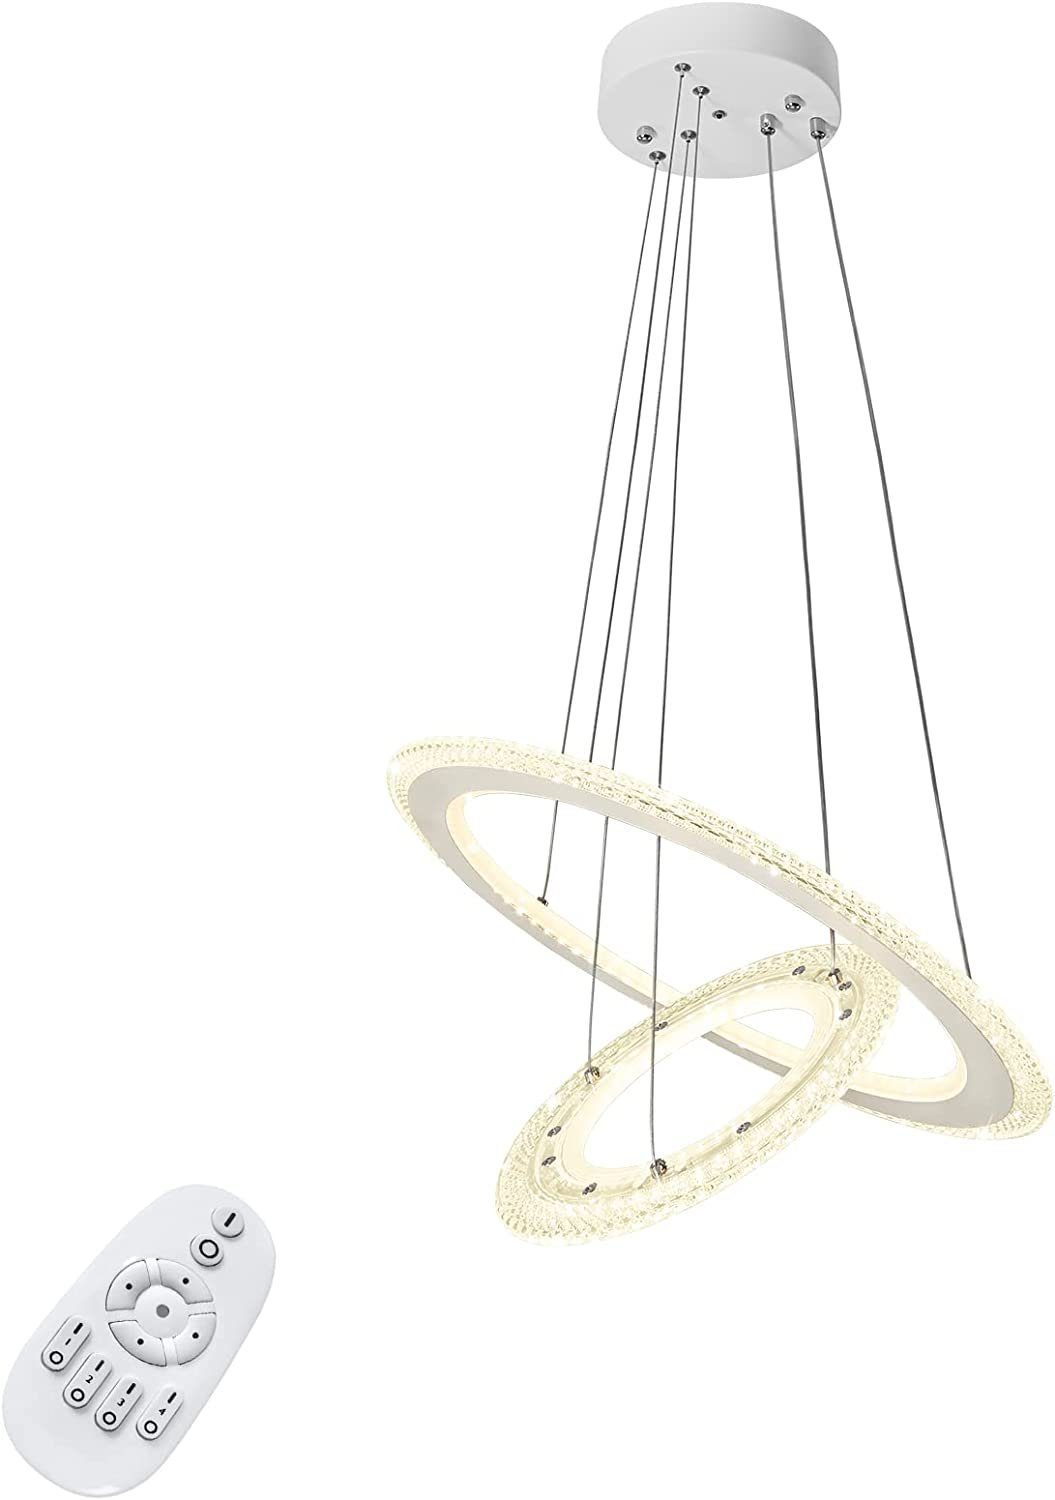 UISEBRT LED Pendelleuchte Hängeleuchte Modern Kristall Kronleuchter Hängelampe Höhenverstellbar, 2/3 Ring Deckenlampe Acryl Leuchte für Wohnzimmer Dimmbar mit Fernbedienung | Pendelleuchten